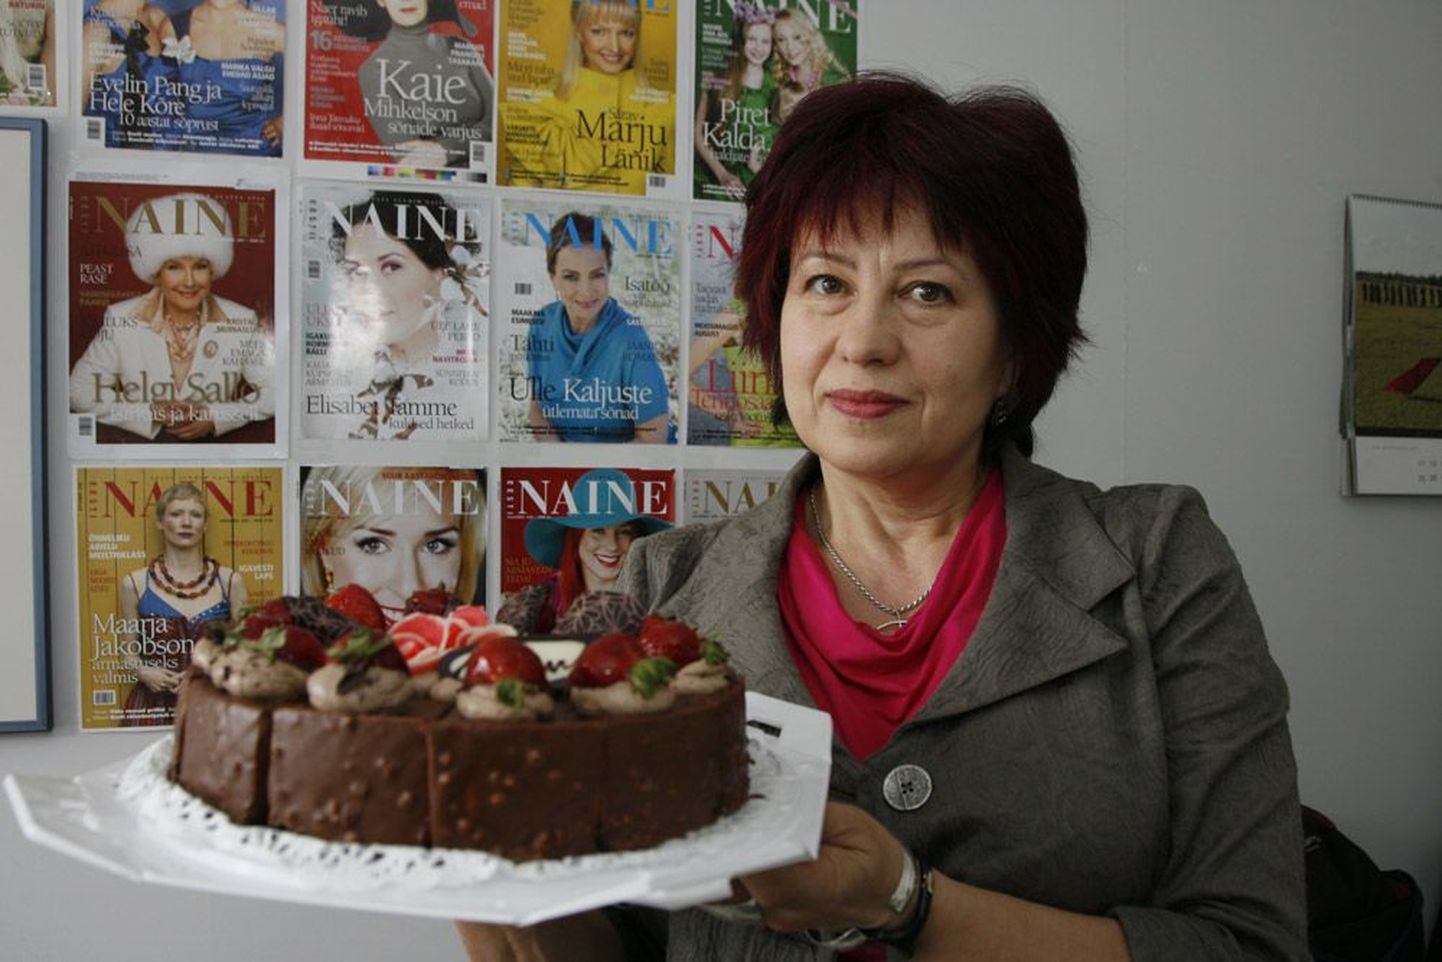 Kodukirja toimetus üllatas Aita Kivi Eesti Naise juubeli puhul suure šokolaadi-maasikatordiga.